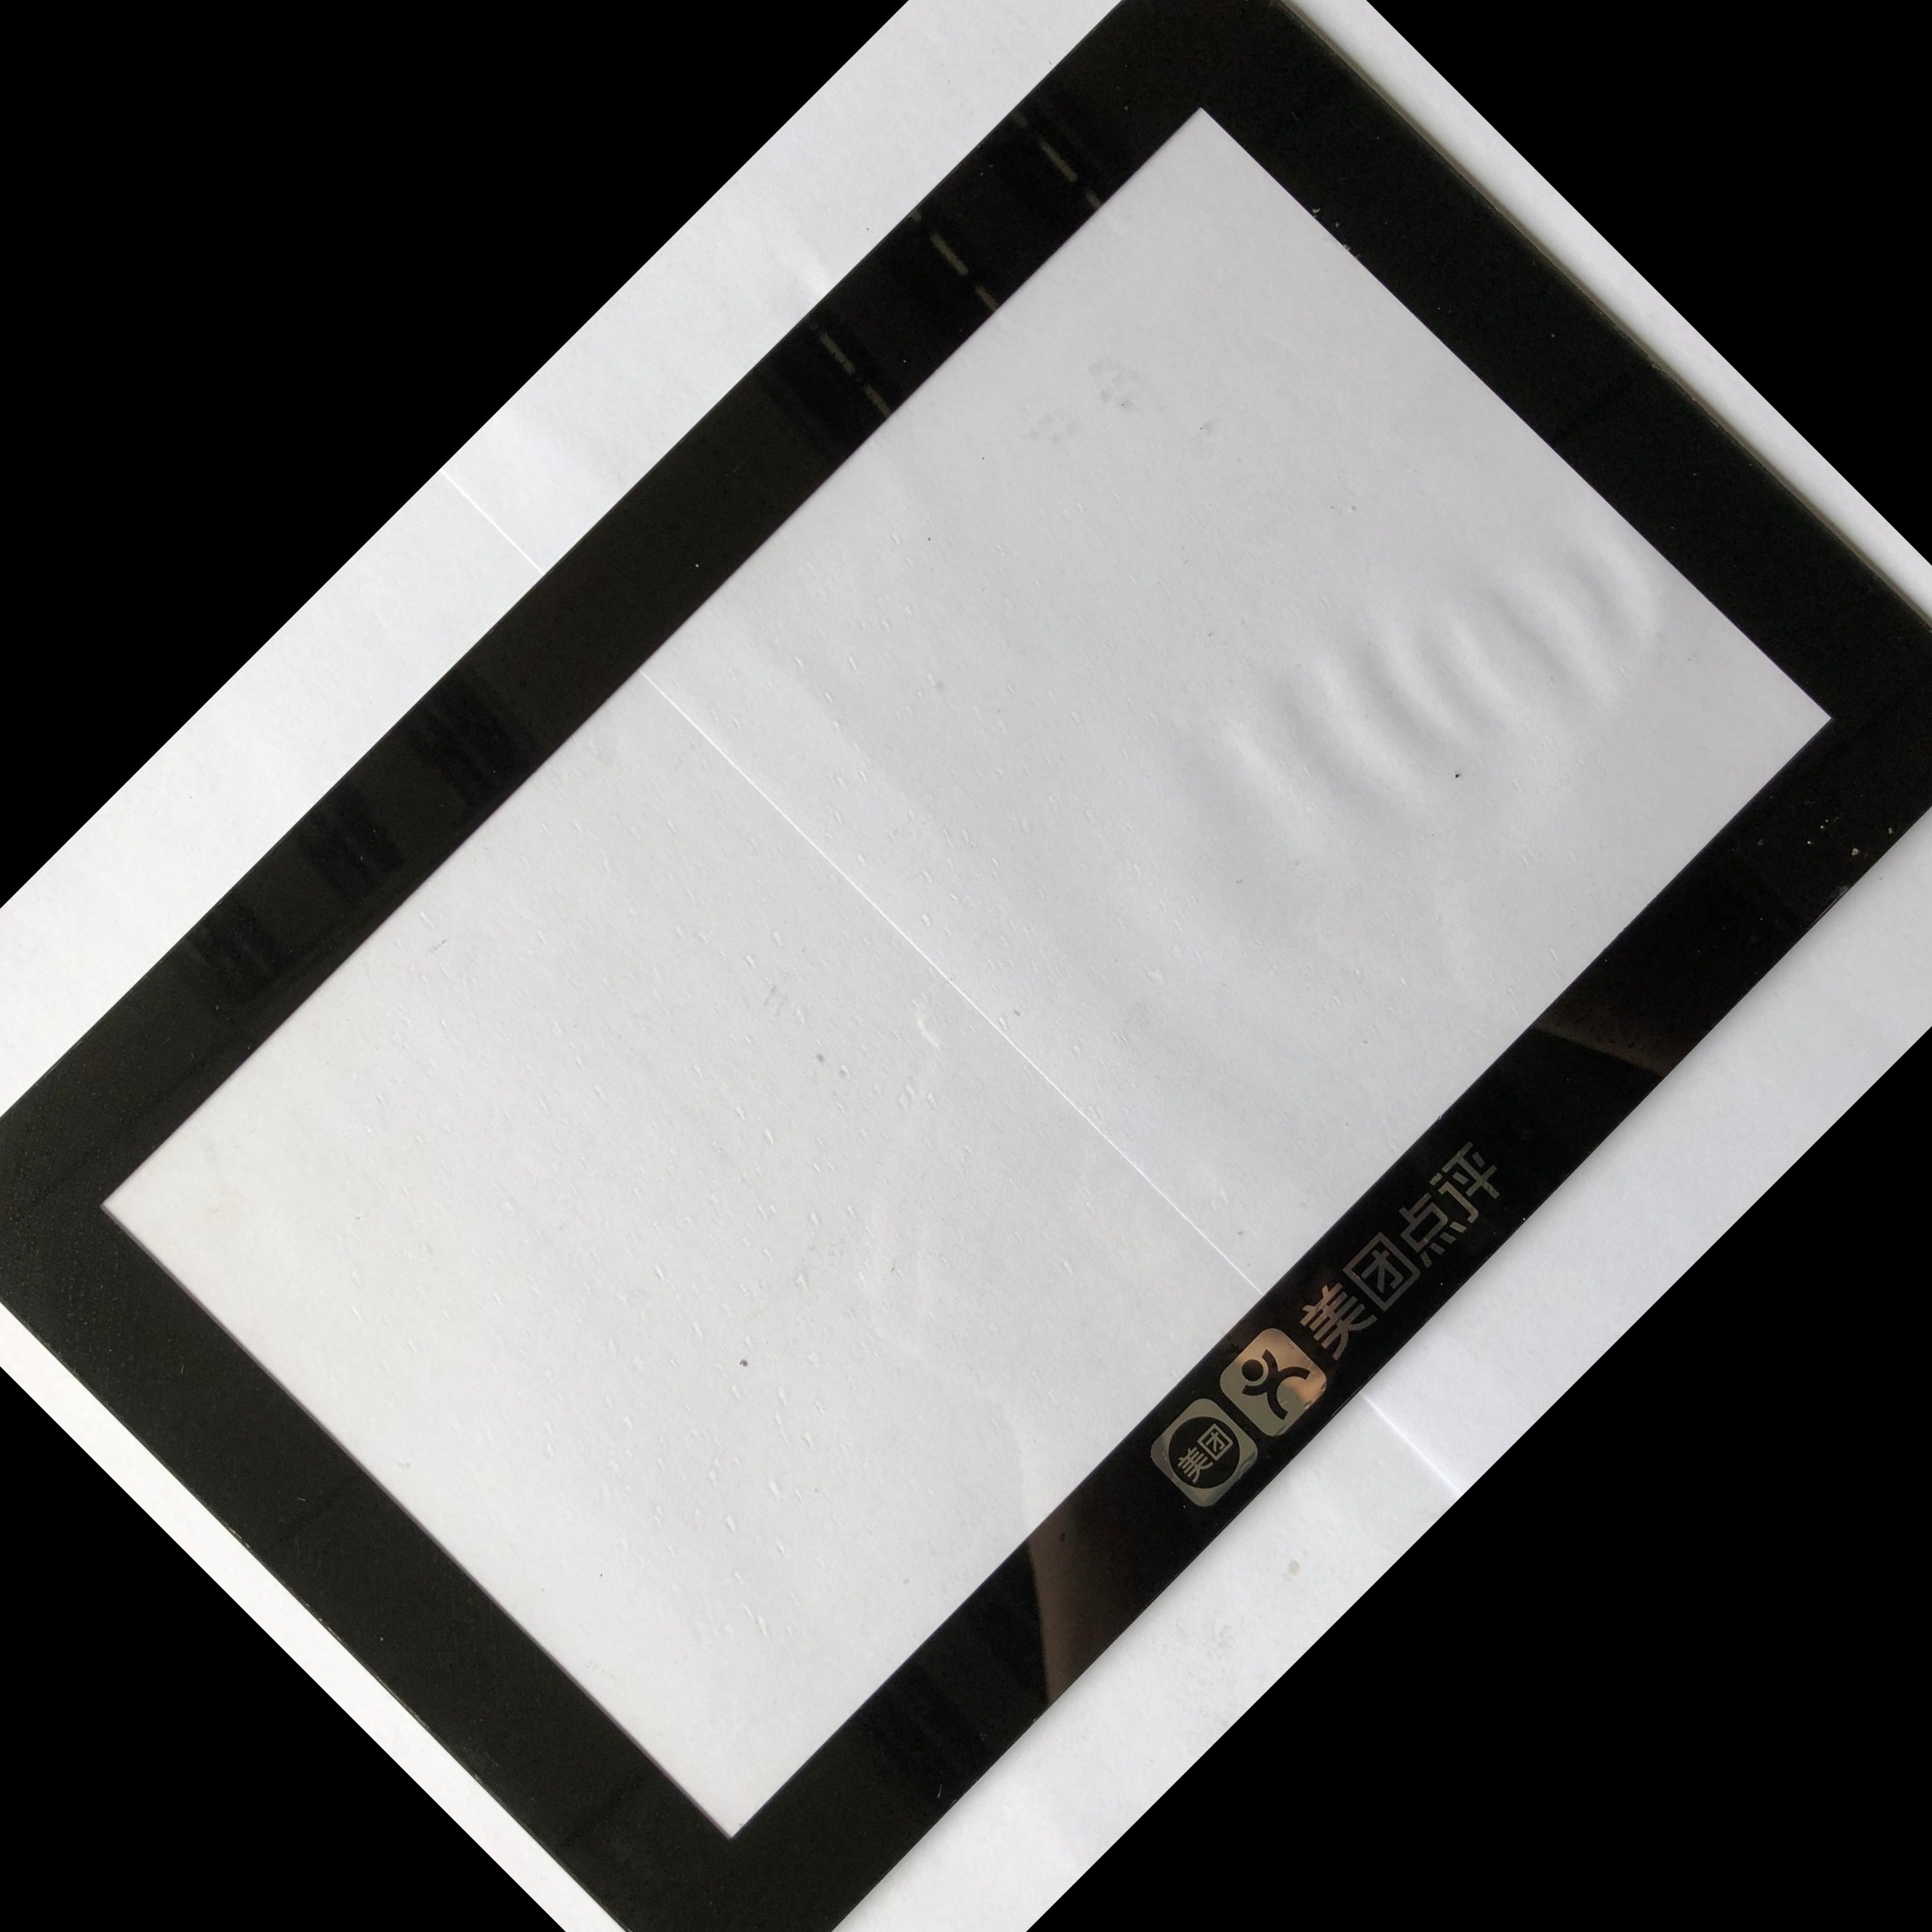 厂家定制PMMA 亚克力镜片 PC面板 镜片 电子产品视窗显示面板 触摸屏面板镜片 亚克力面板生产厂家 2.5D图片